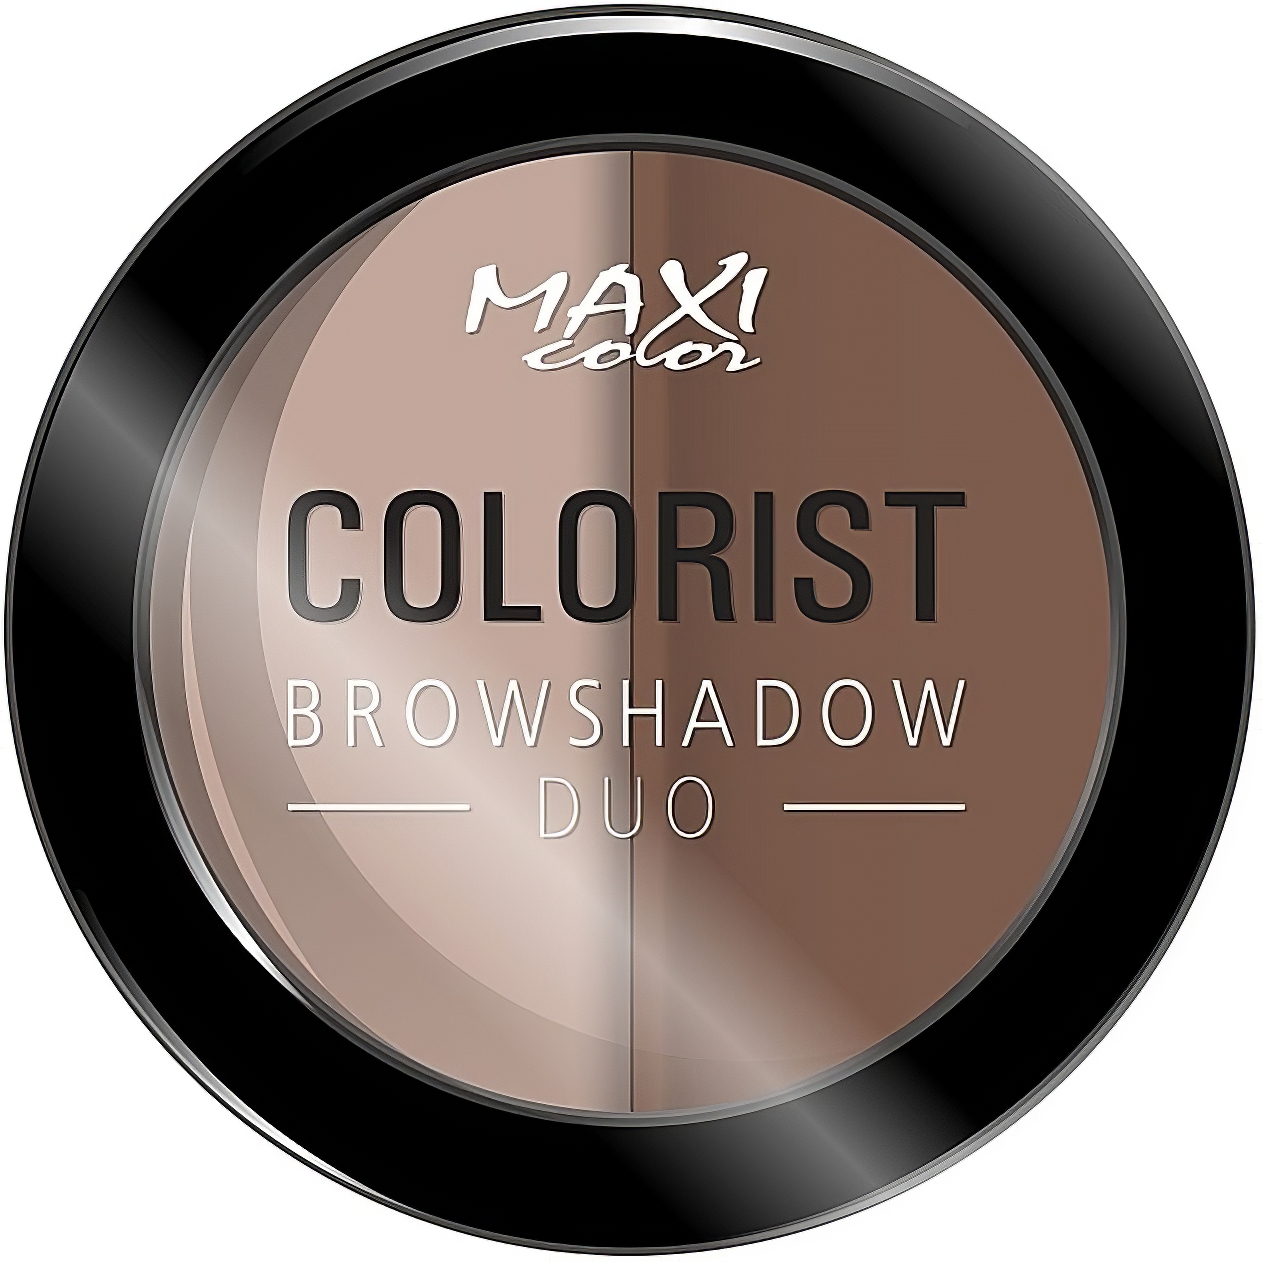 Тени для бровей Maxi Color Colorist Browshadow Duo тон 01 (Натуральный брюнет) 3 г - фото 1